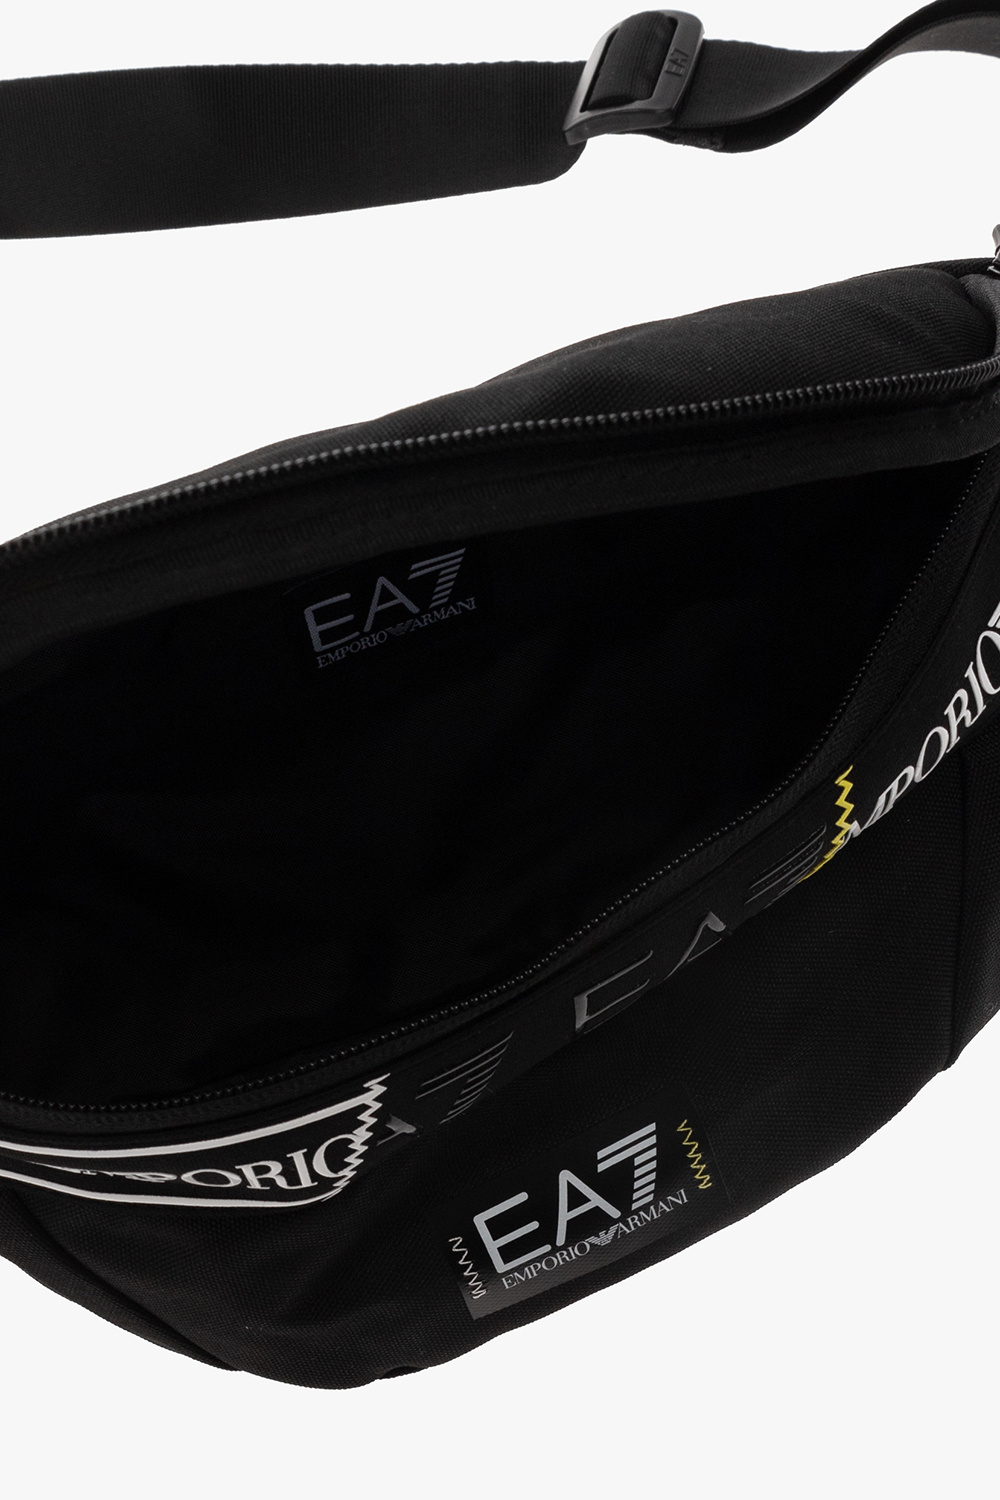 EA7 Emporio armani k001 Belt bag with logo